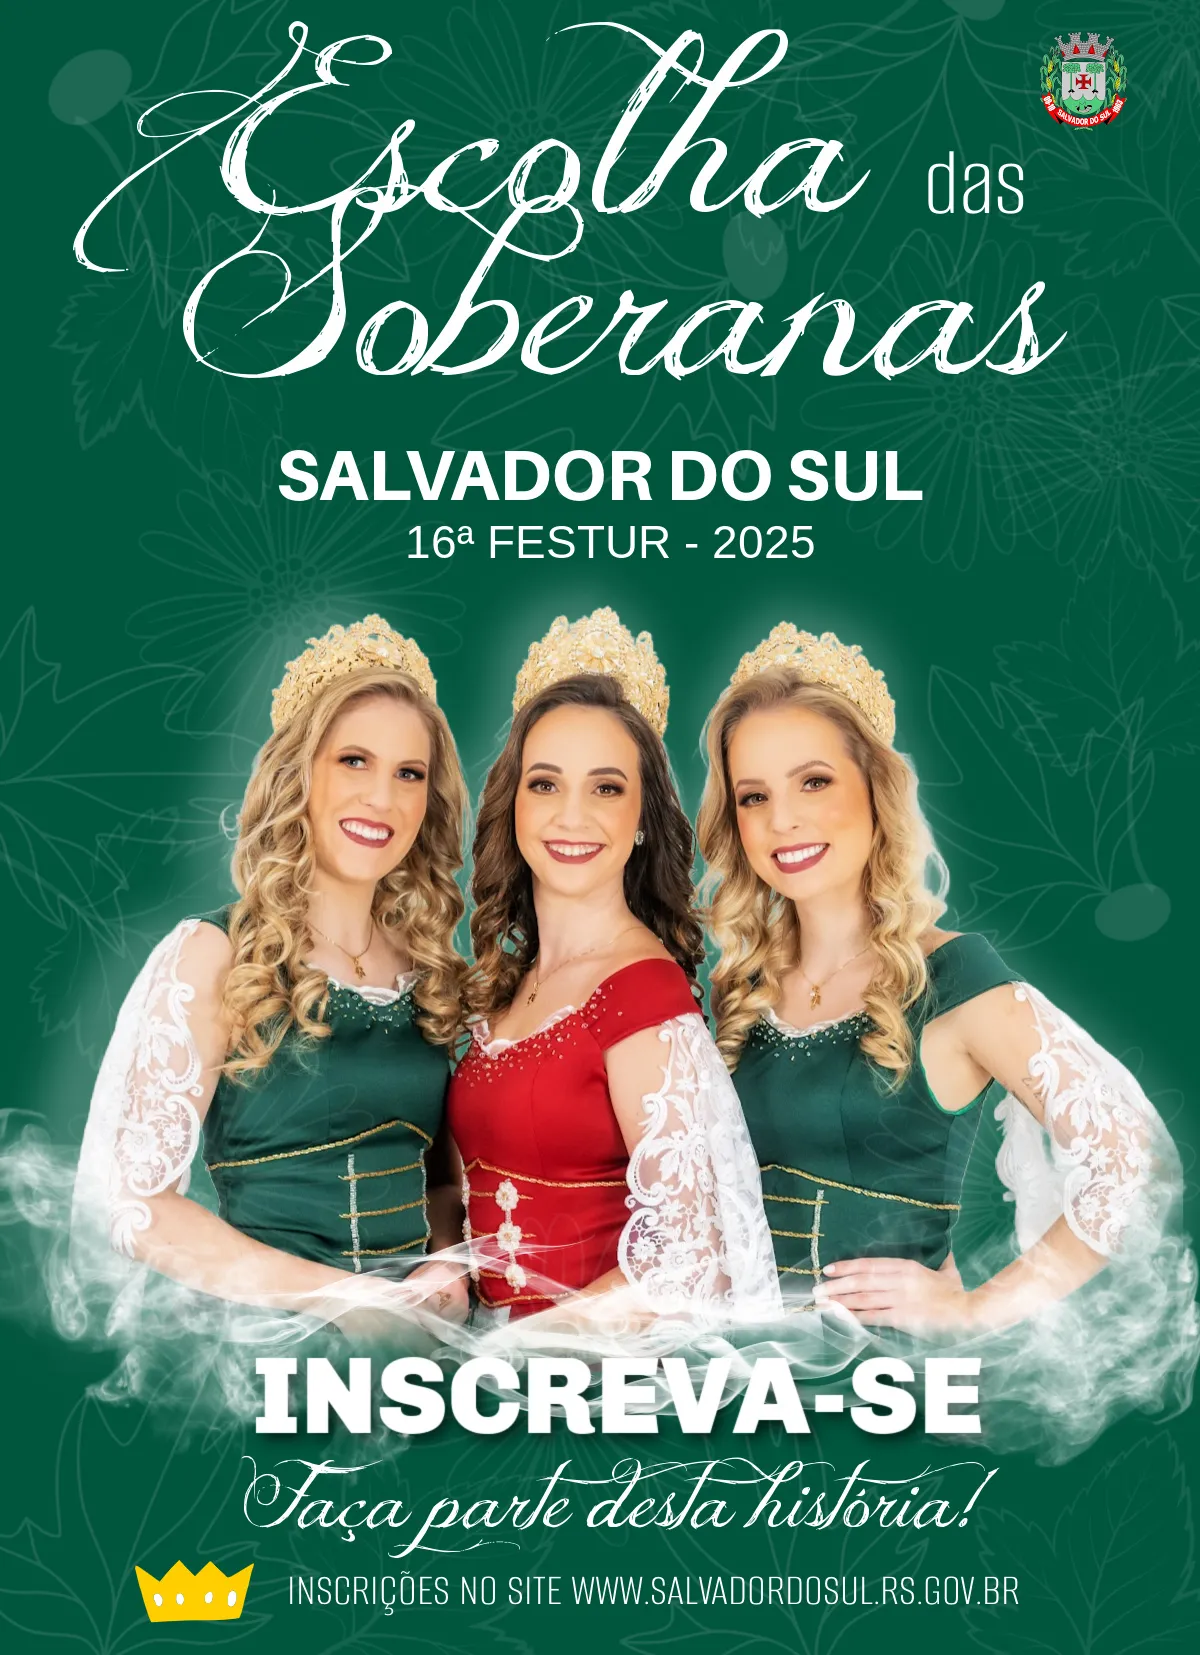 Inscries para Soberanas de Salvador do Sul e da Festur iniciam dia 18